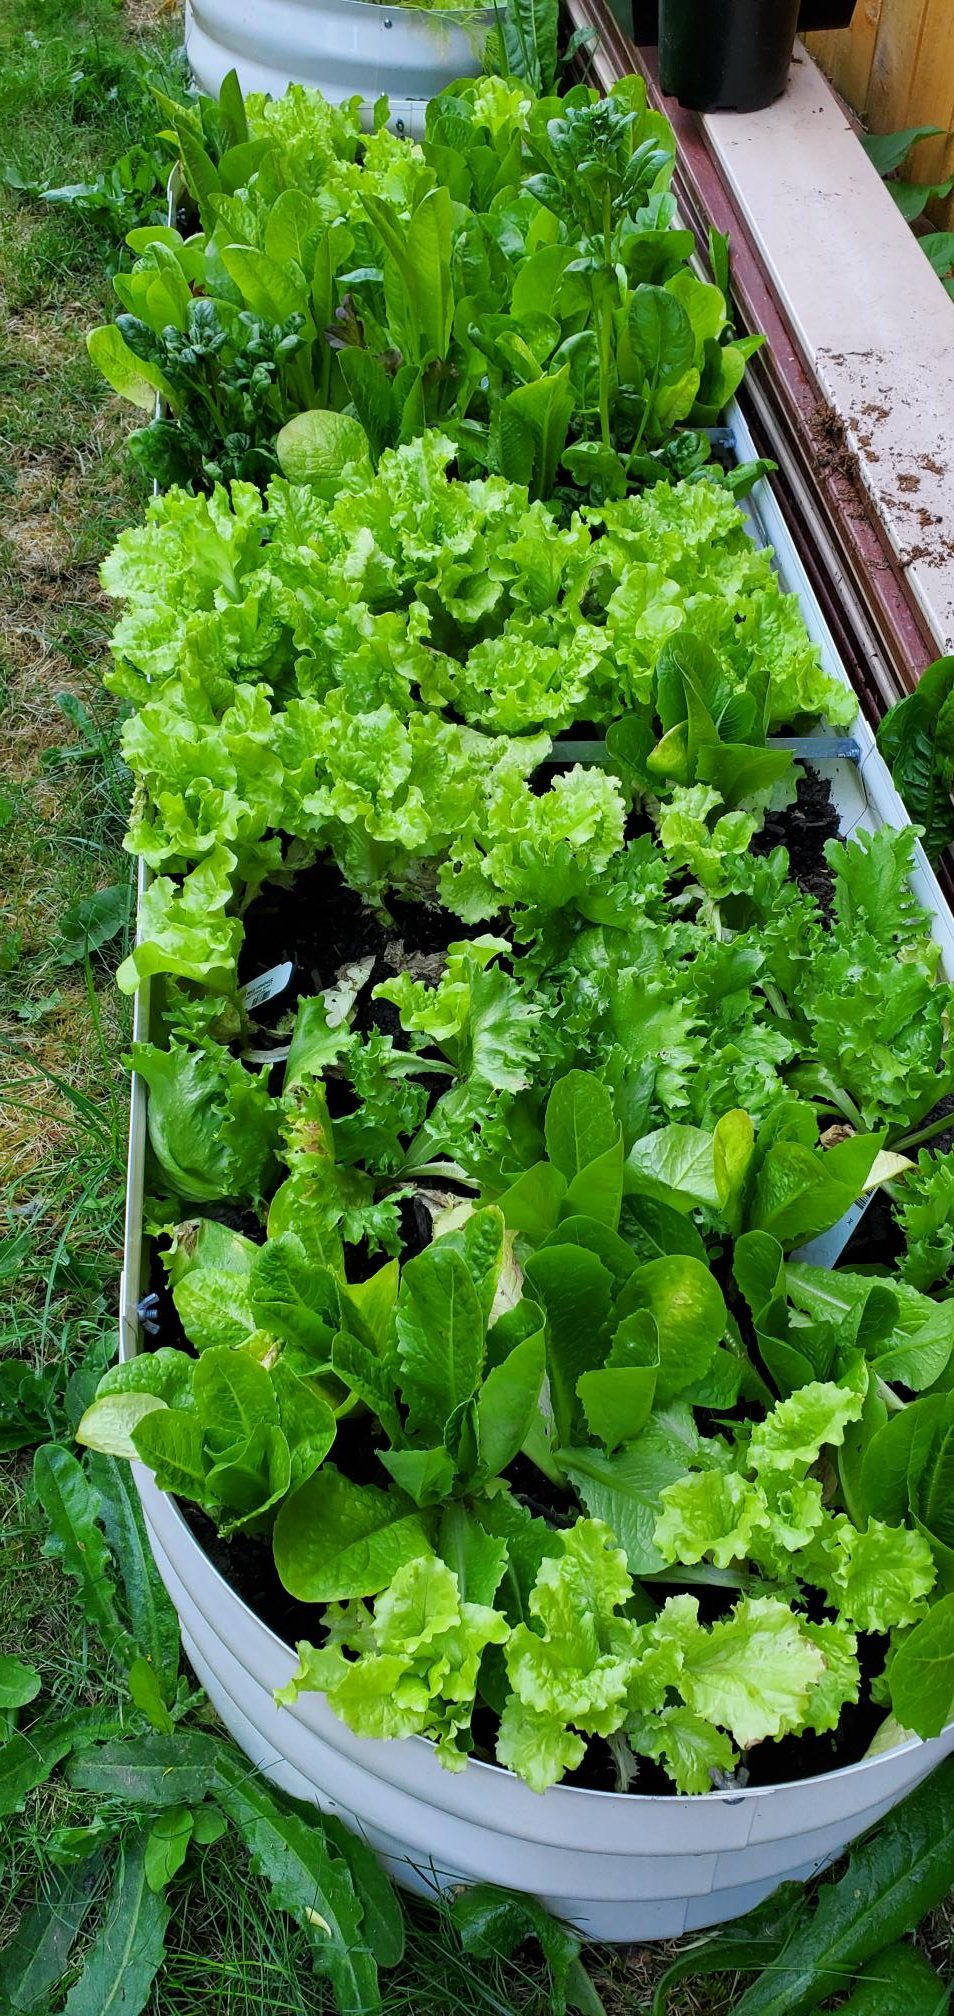 Lettuce grown in our backyard homestead.